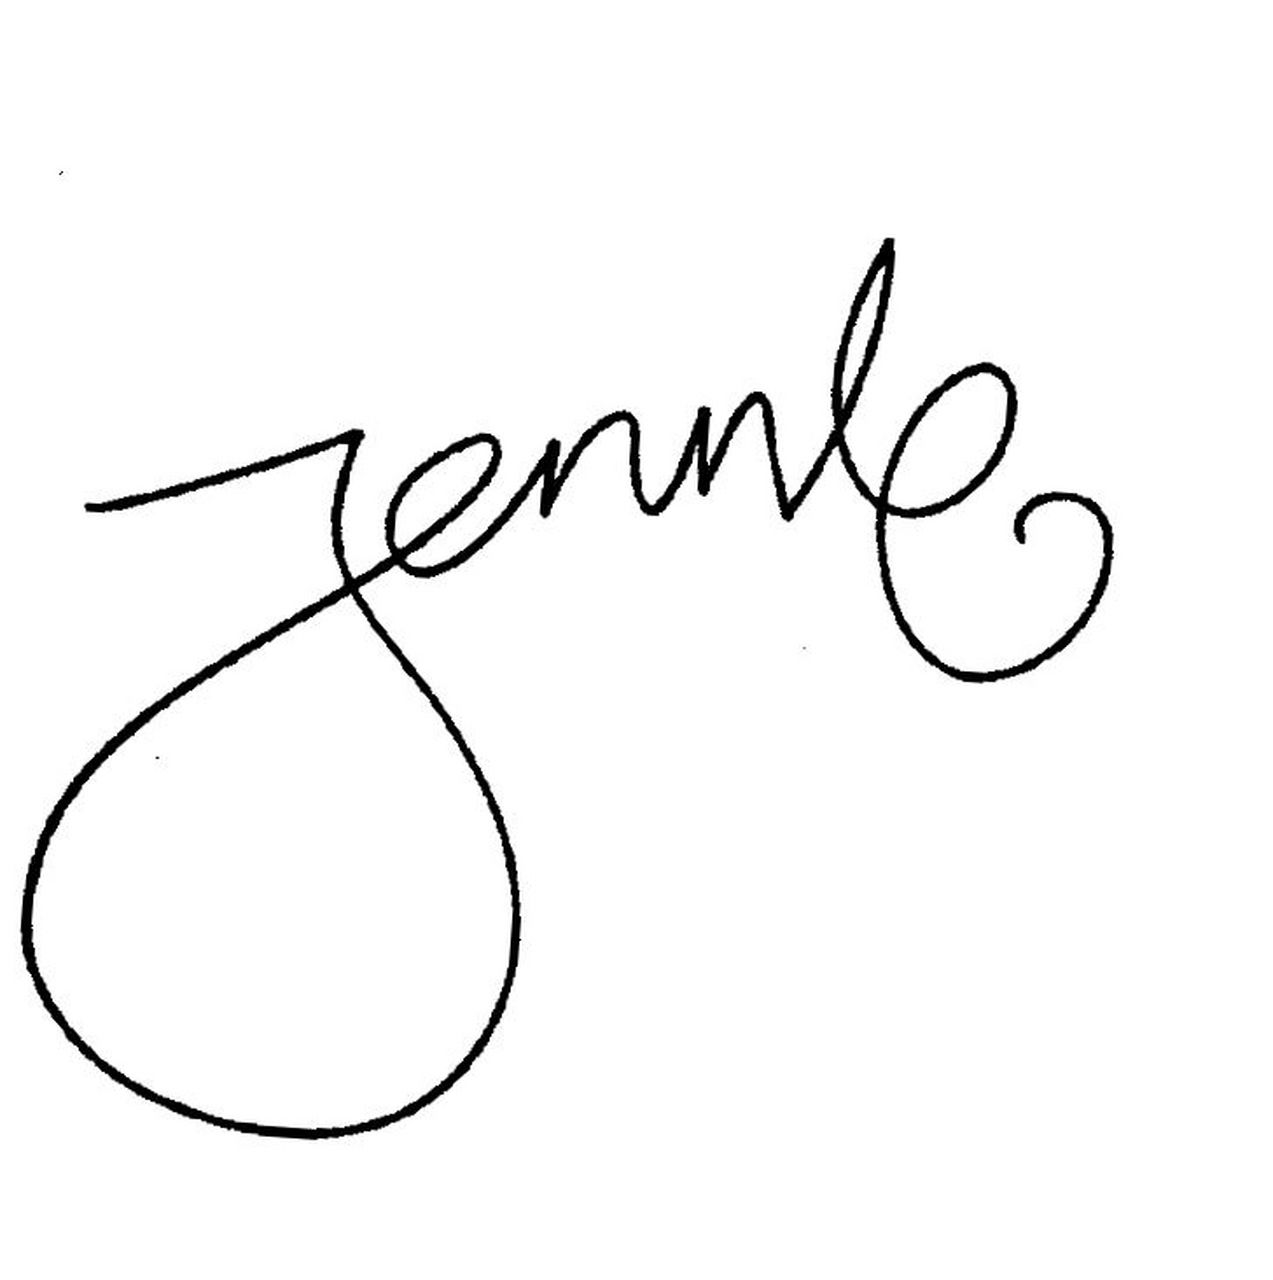 jennie签名长什么样图片